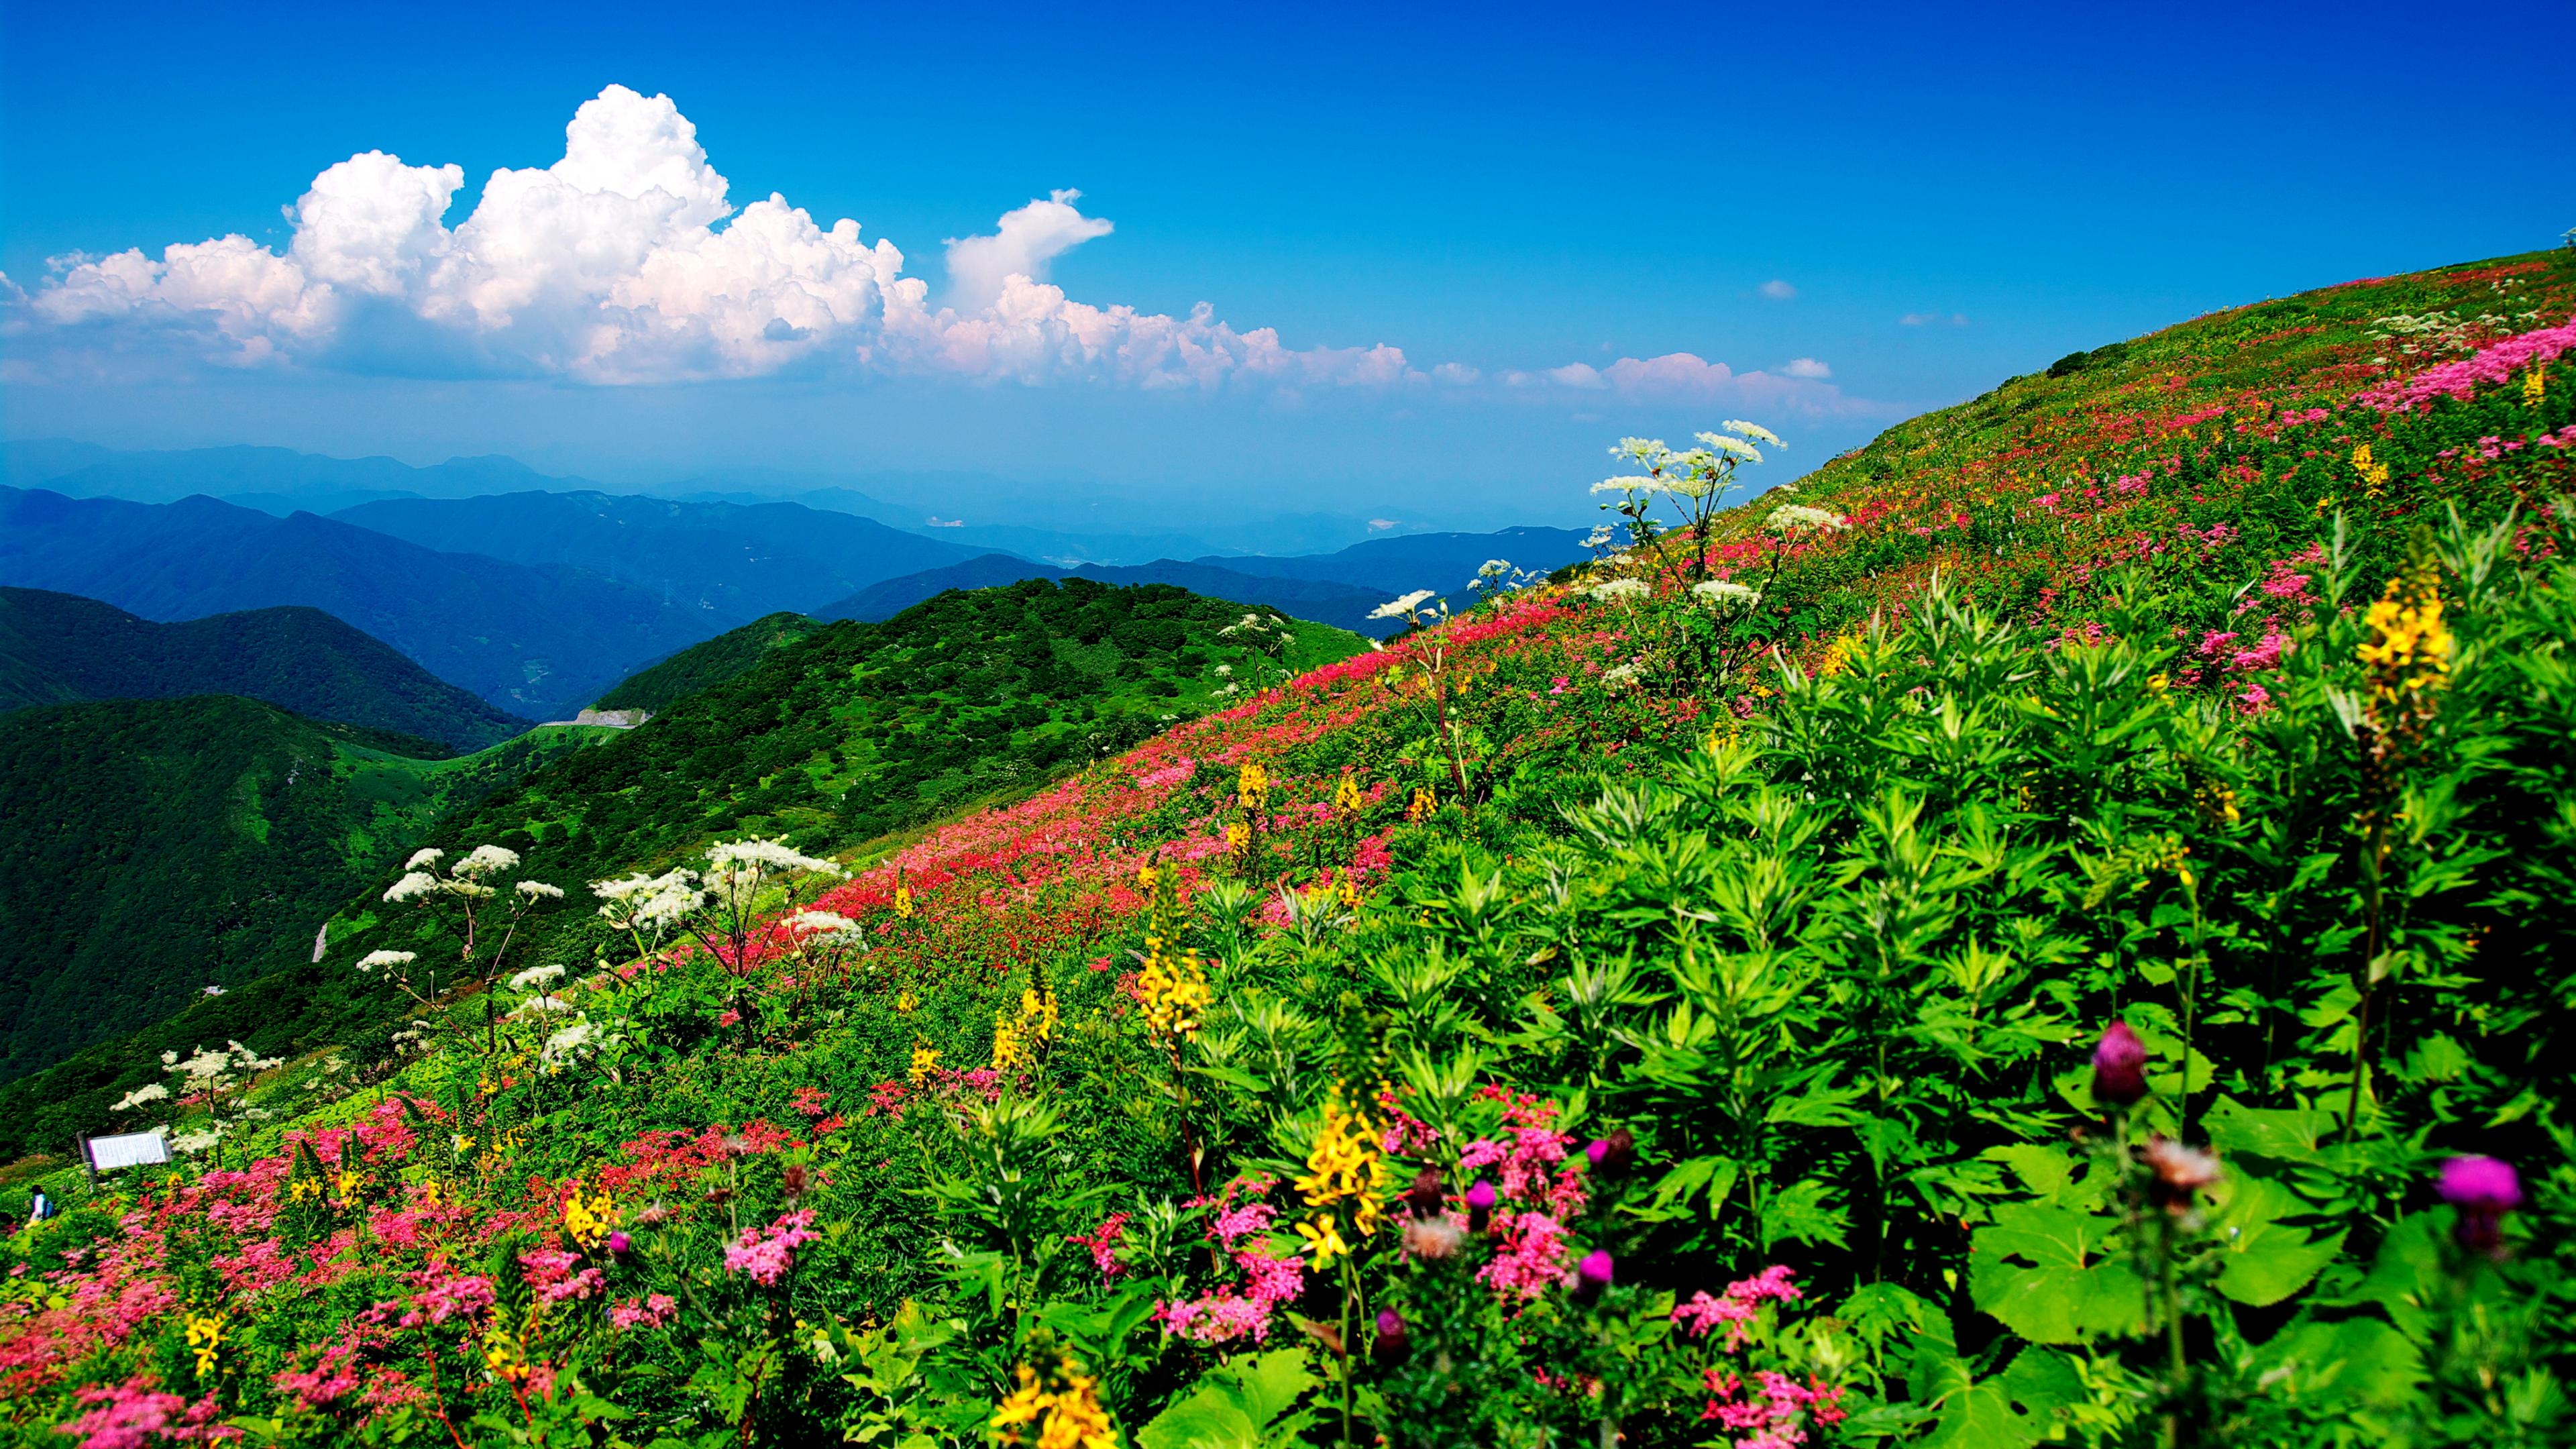 Скачать обои бесплатно Пейзаж, Облака, Гора, Цветок, Холм, Земля/природа картинка на рабочий стол ПК